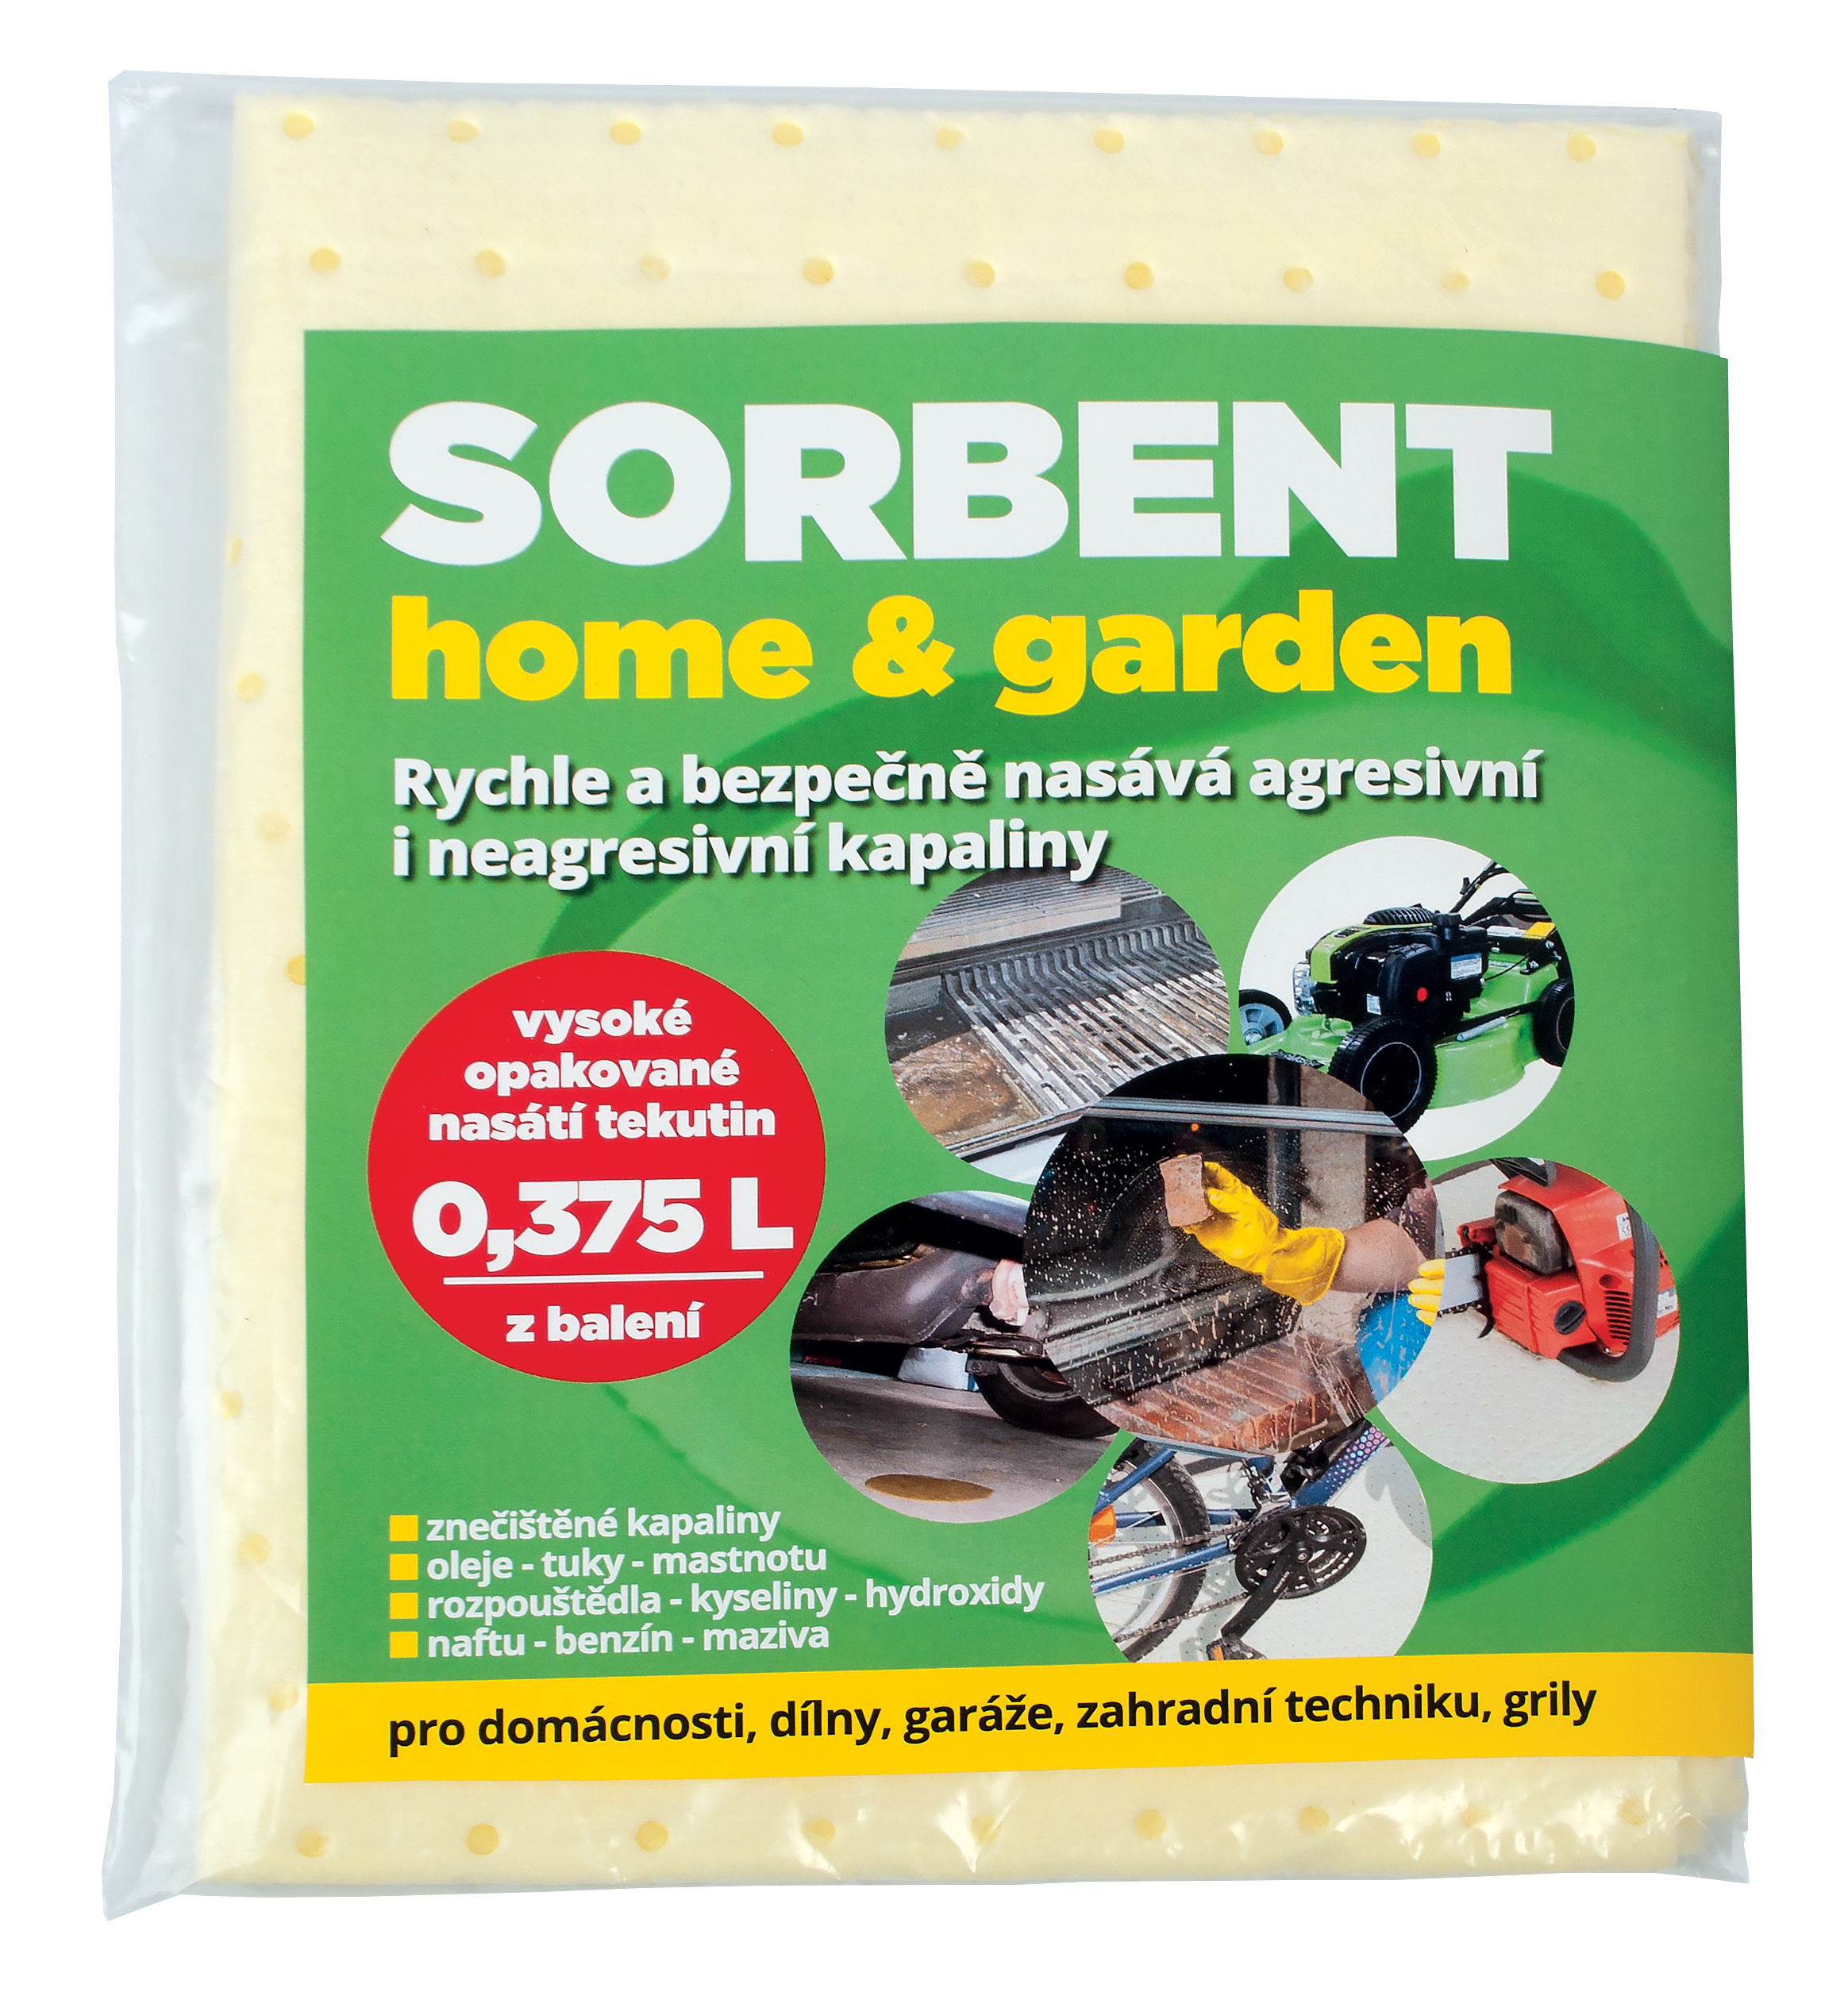 Sorbent home & garden